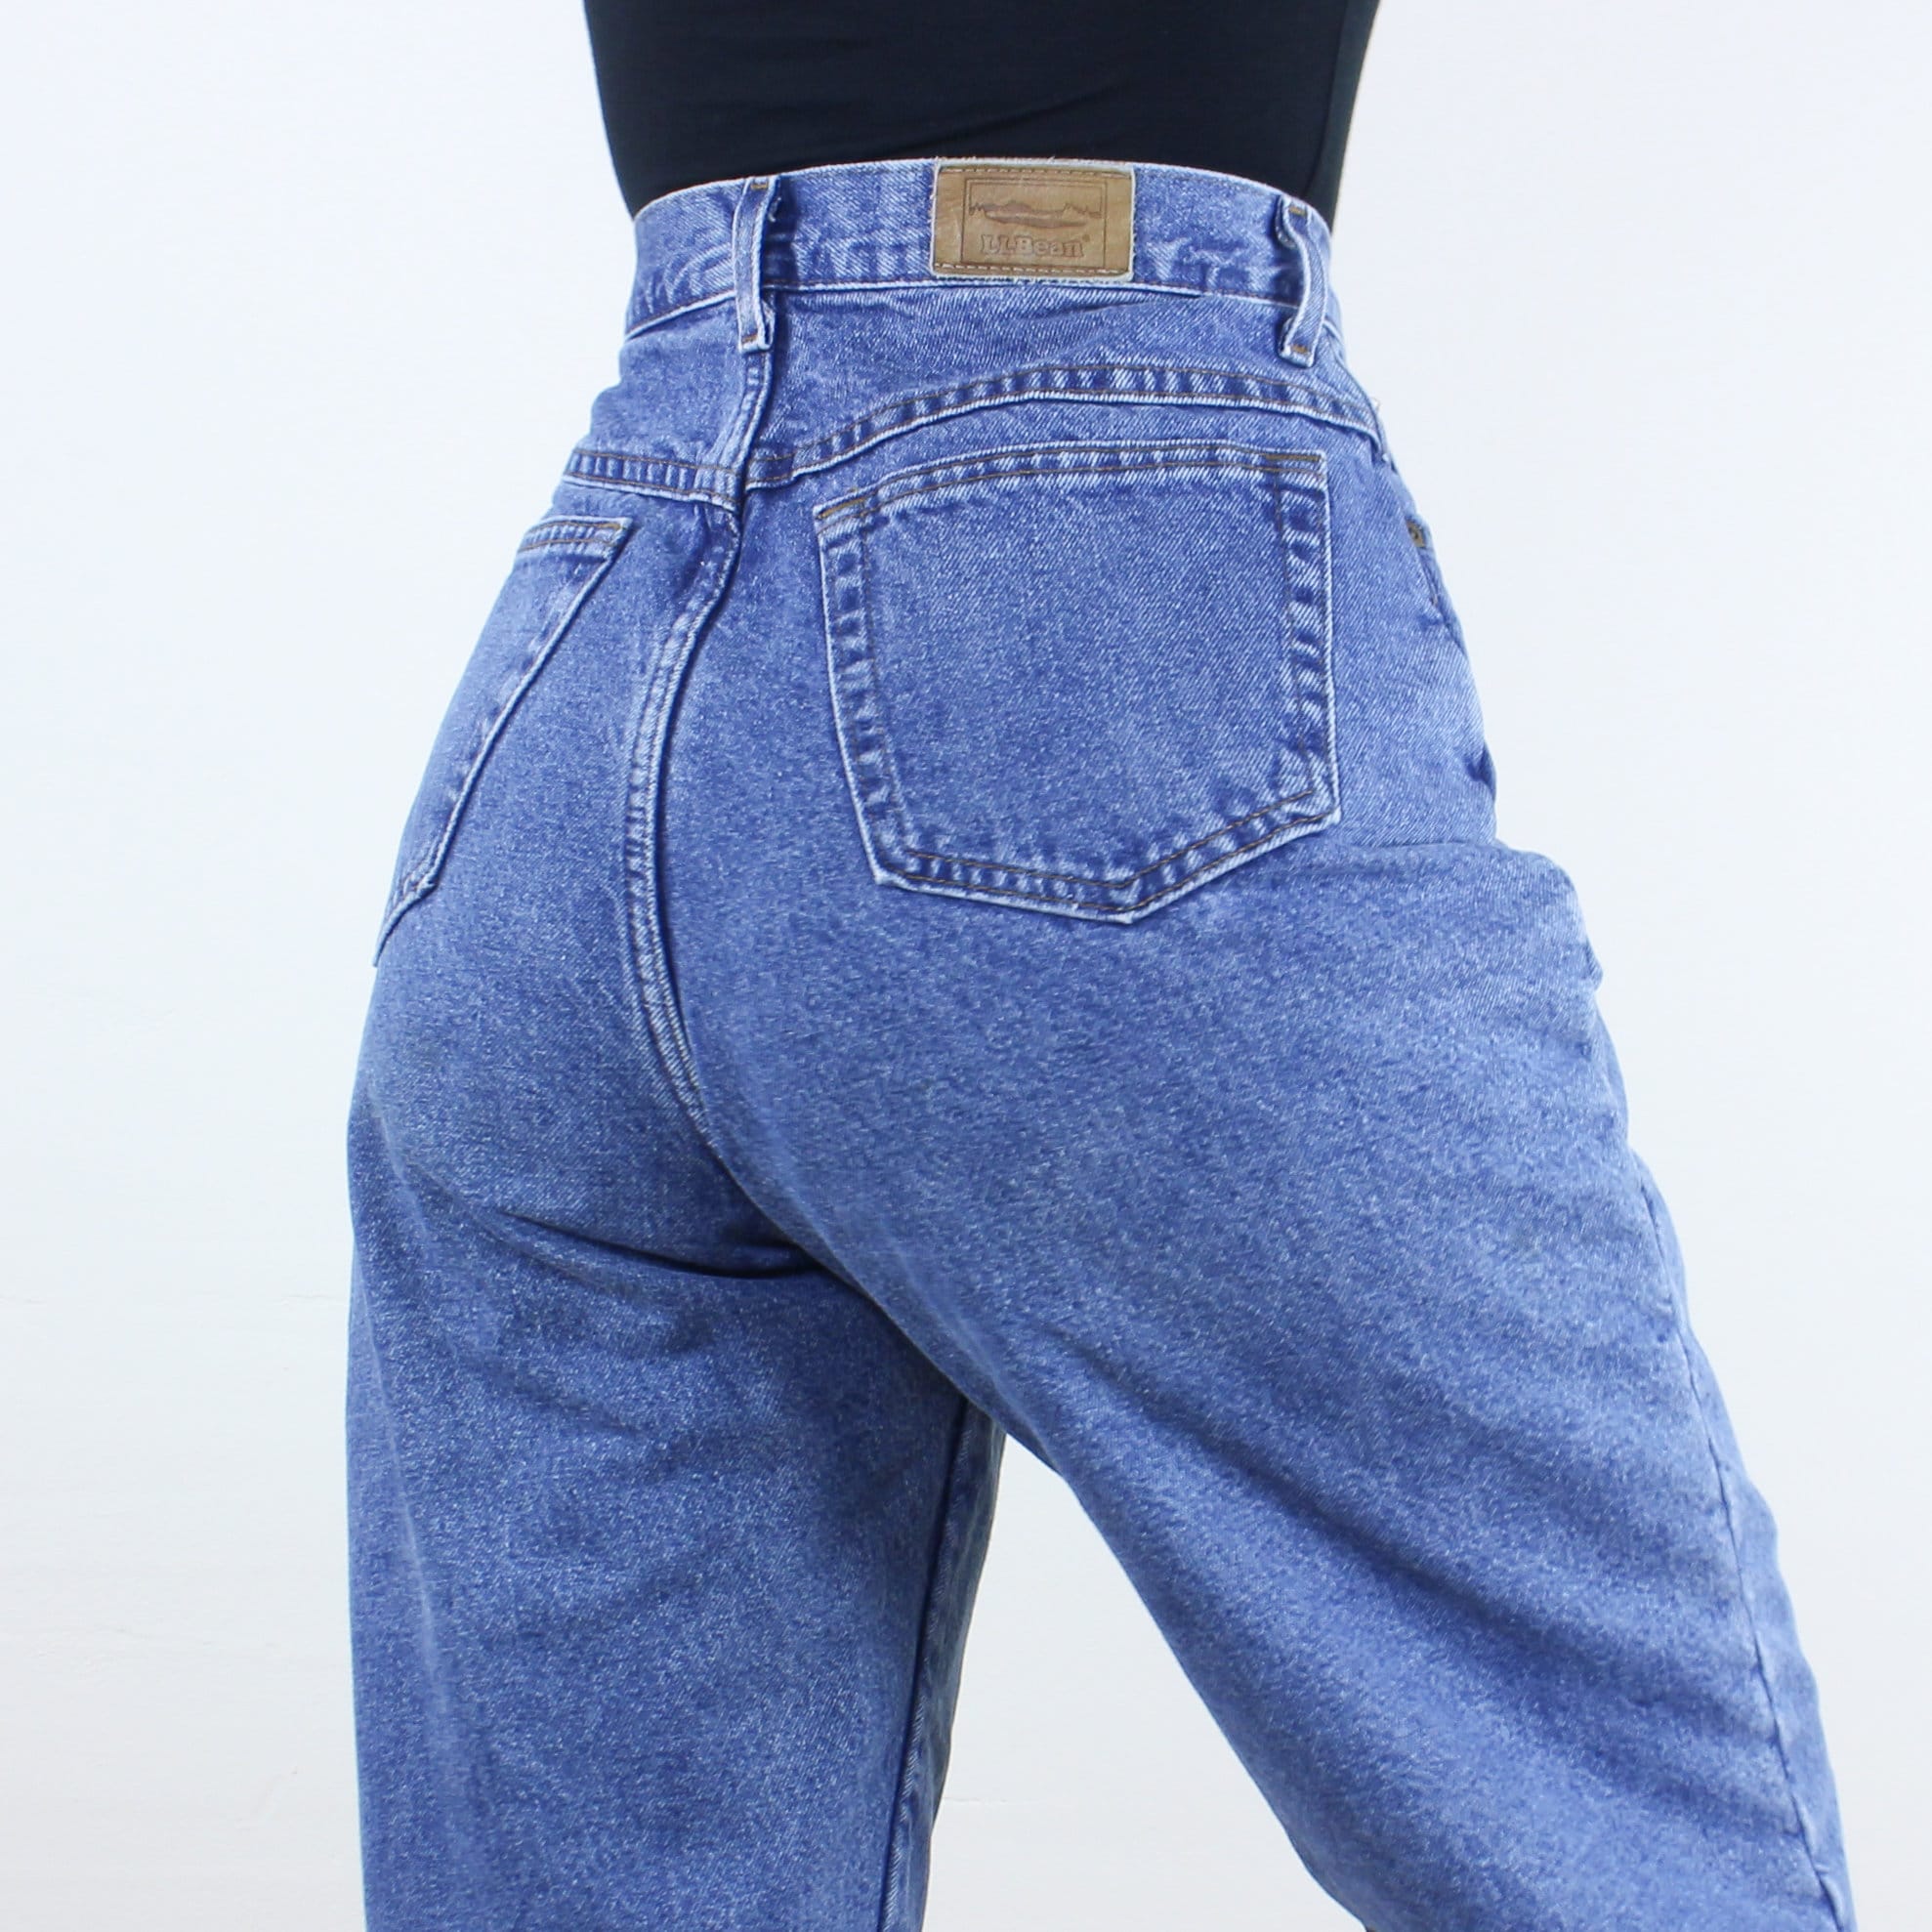 Insulated Gear Men's Fleece Lined Jeans 